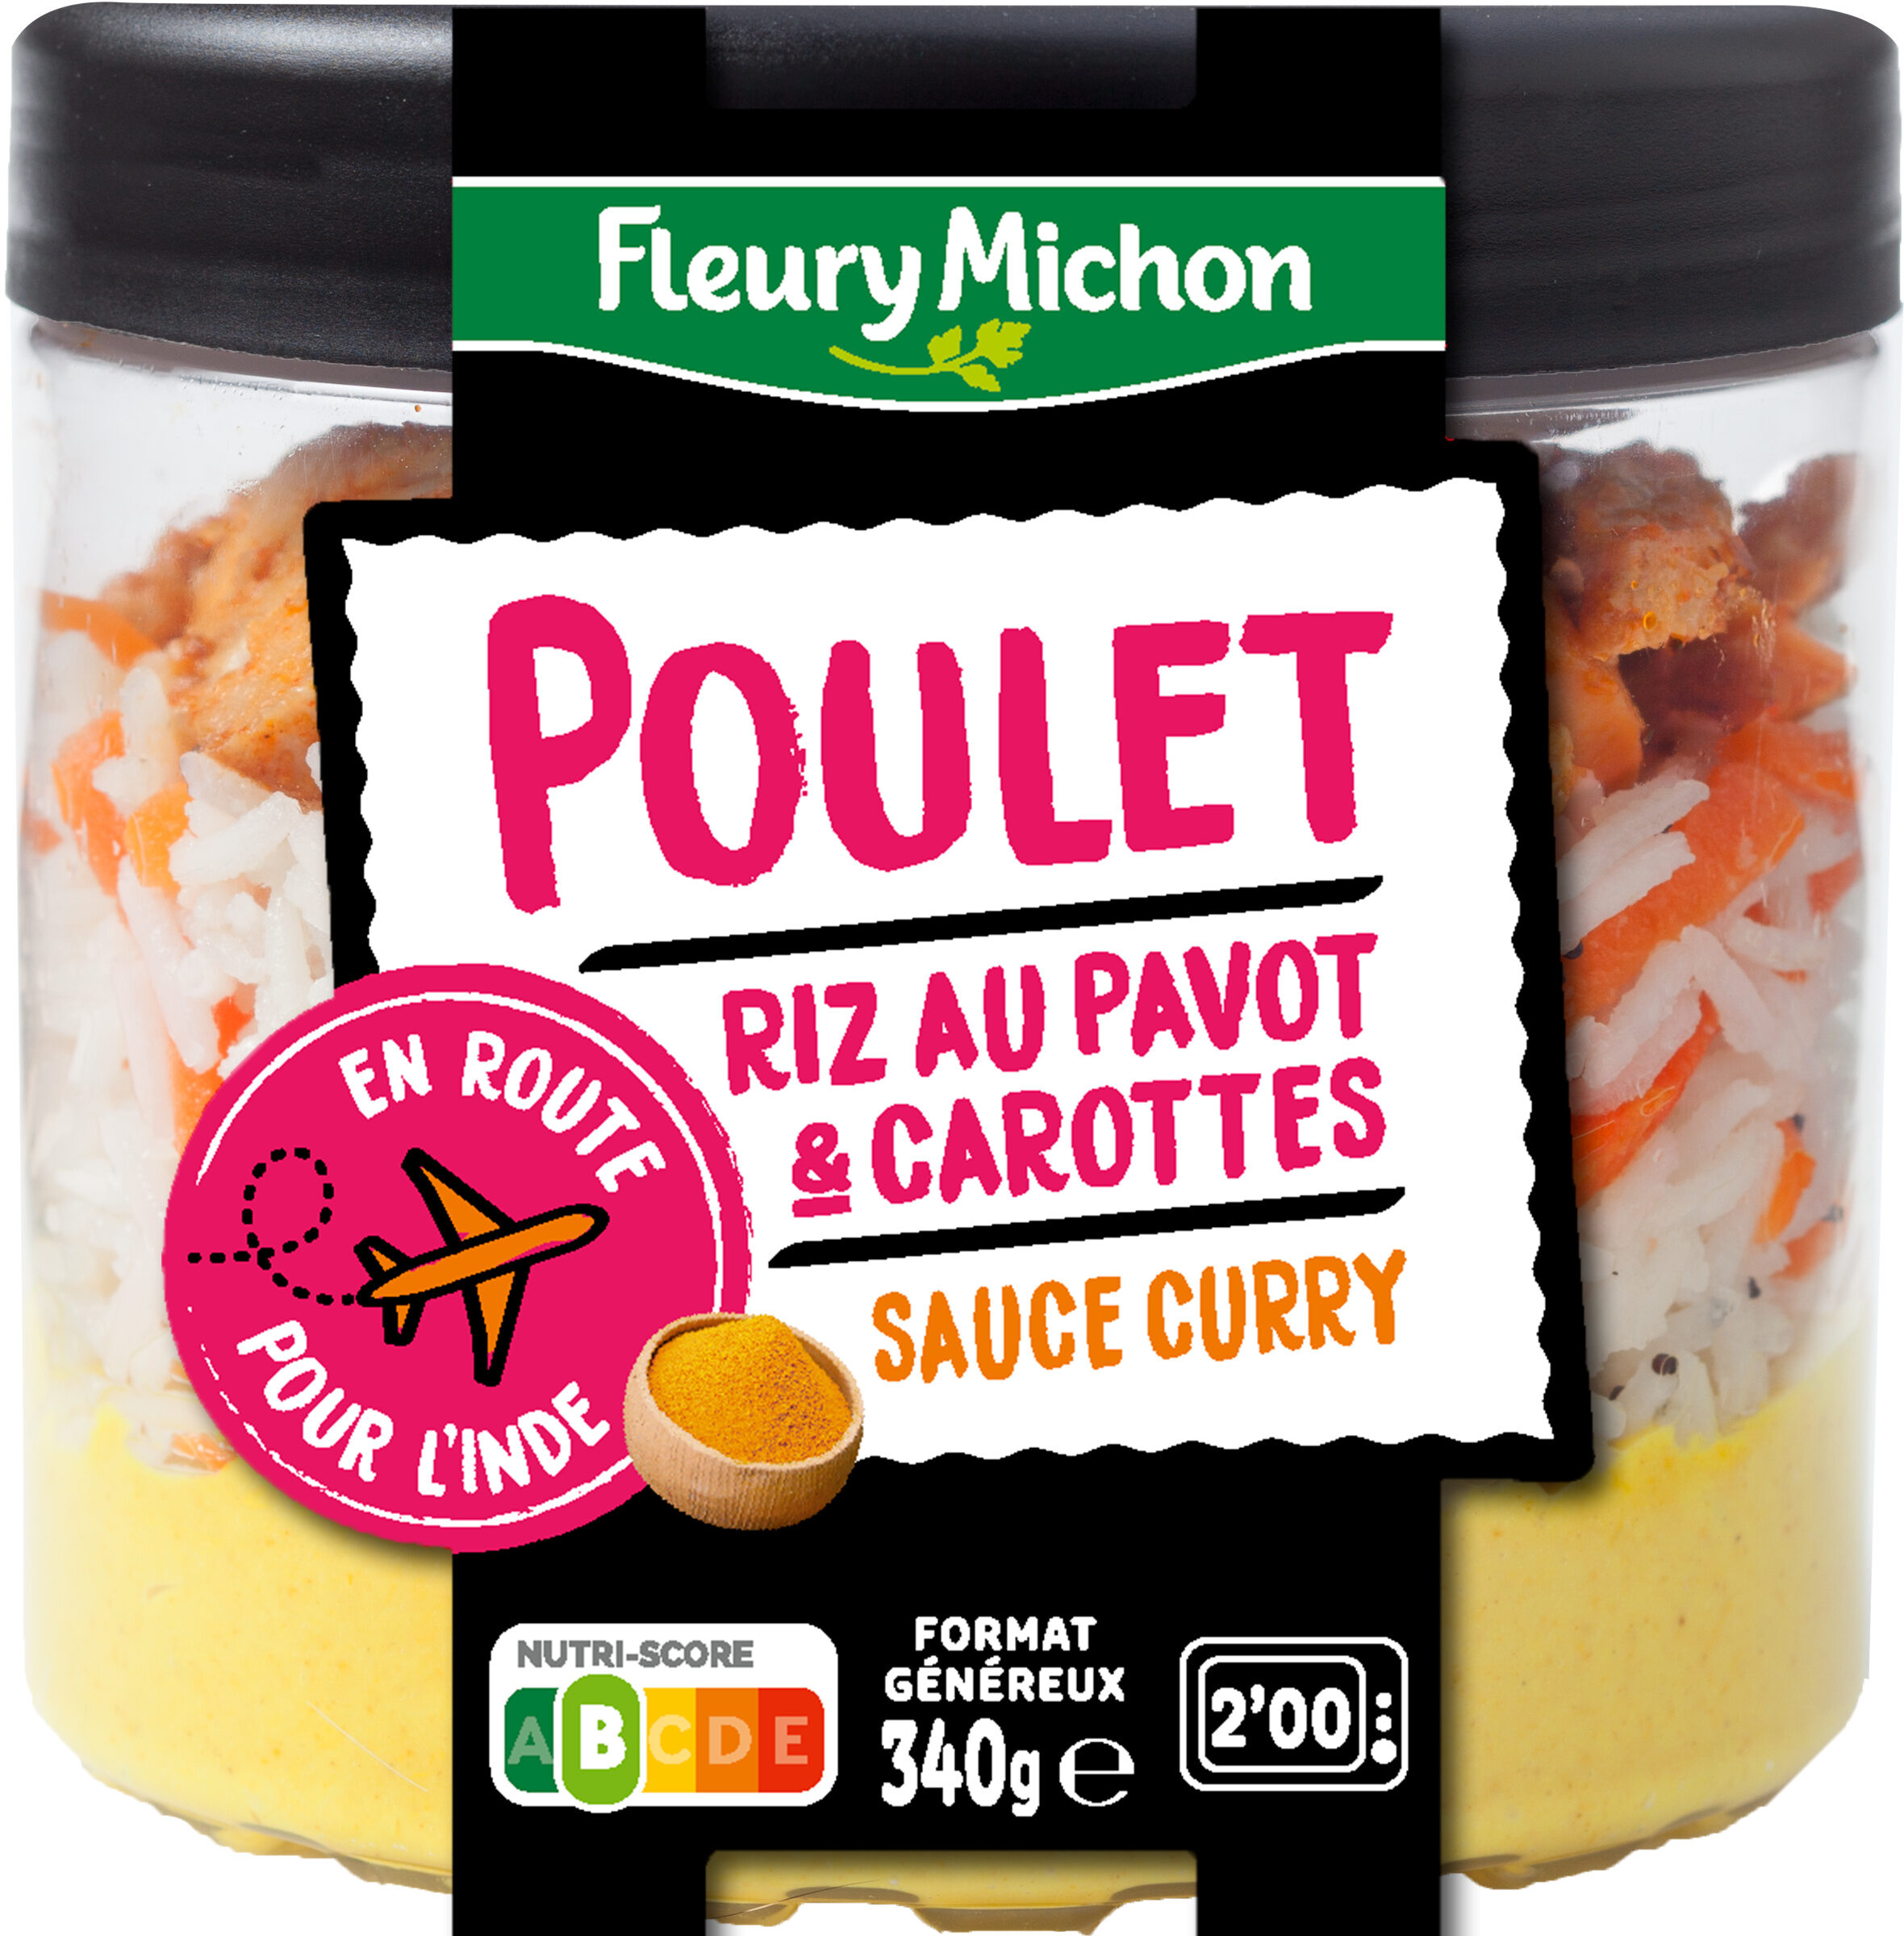 Poulet riz au pavot & carottes sauce curry - Product - fr